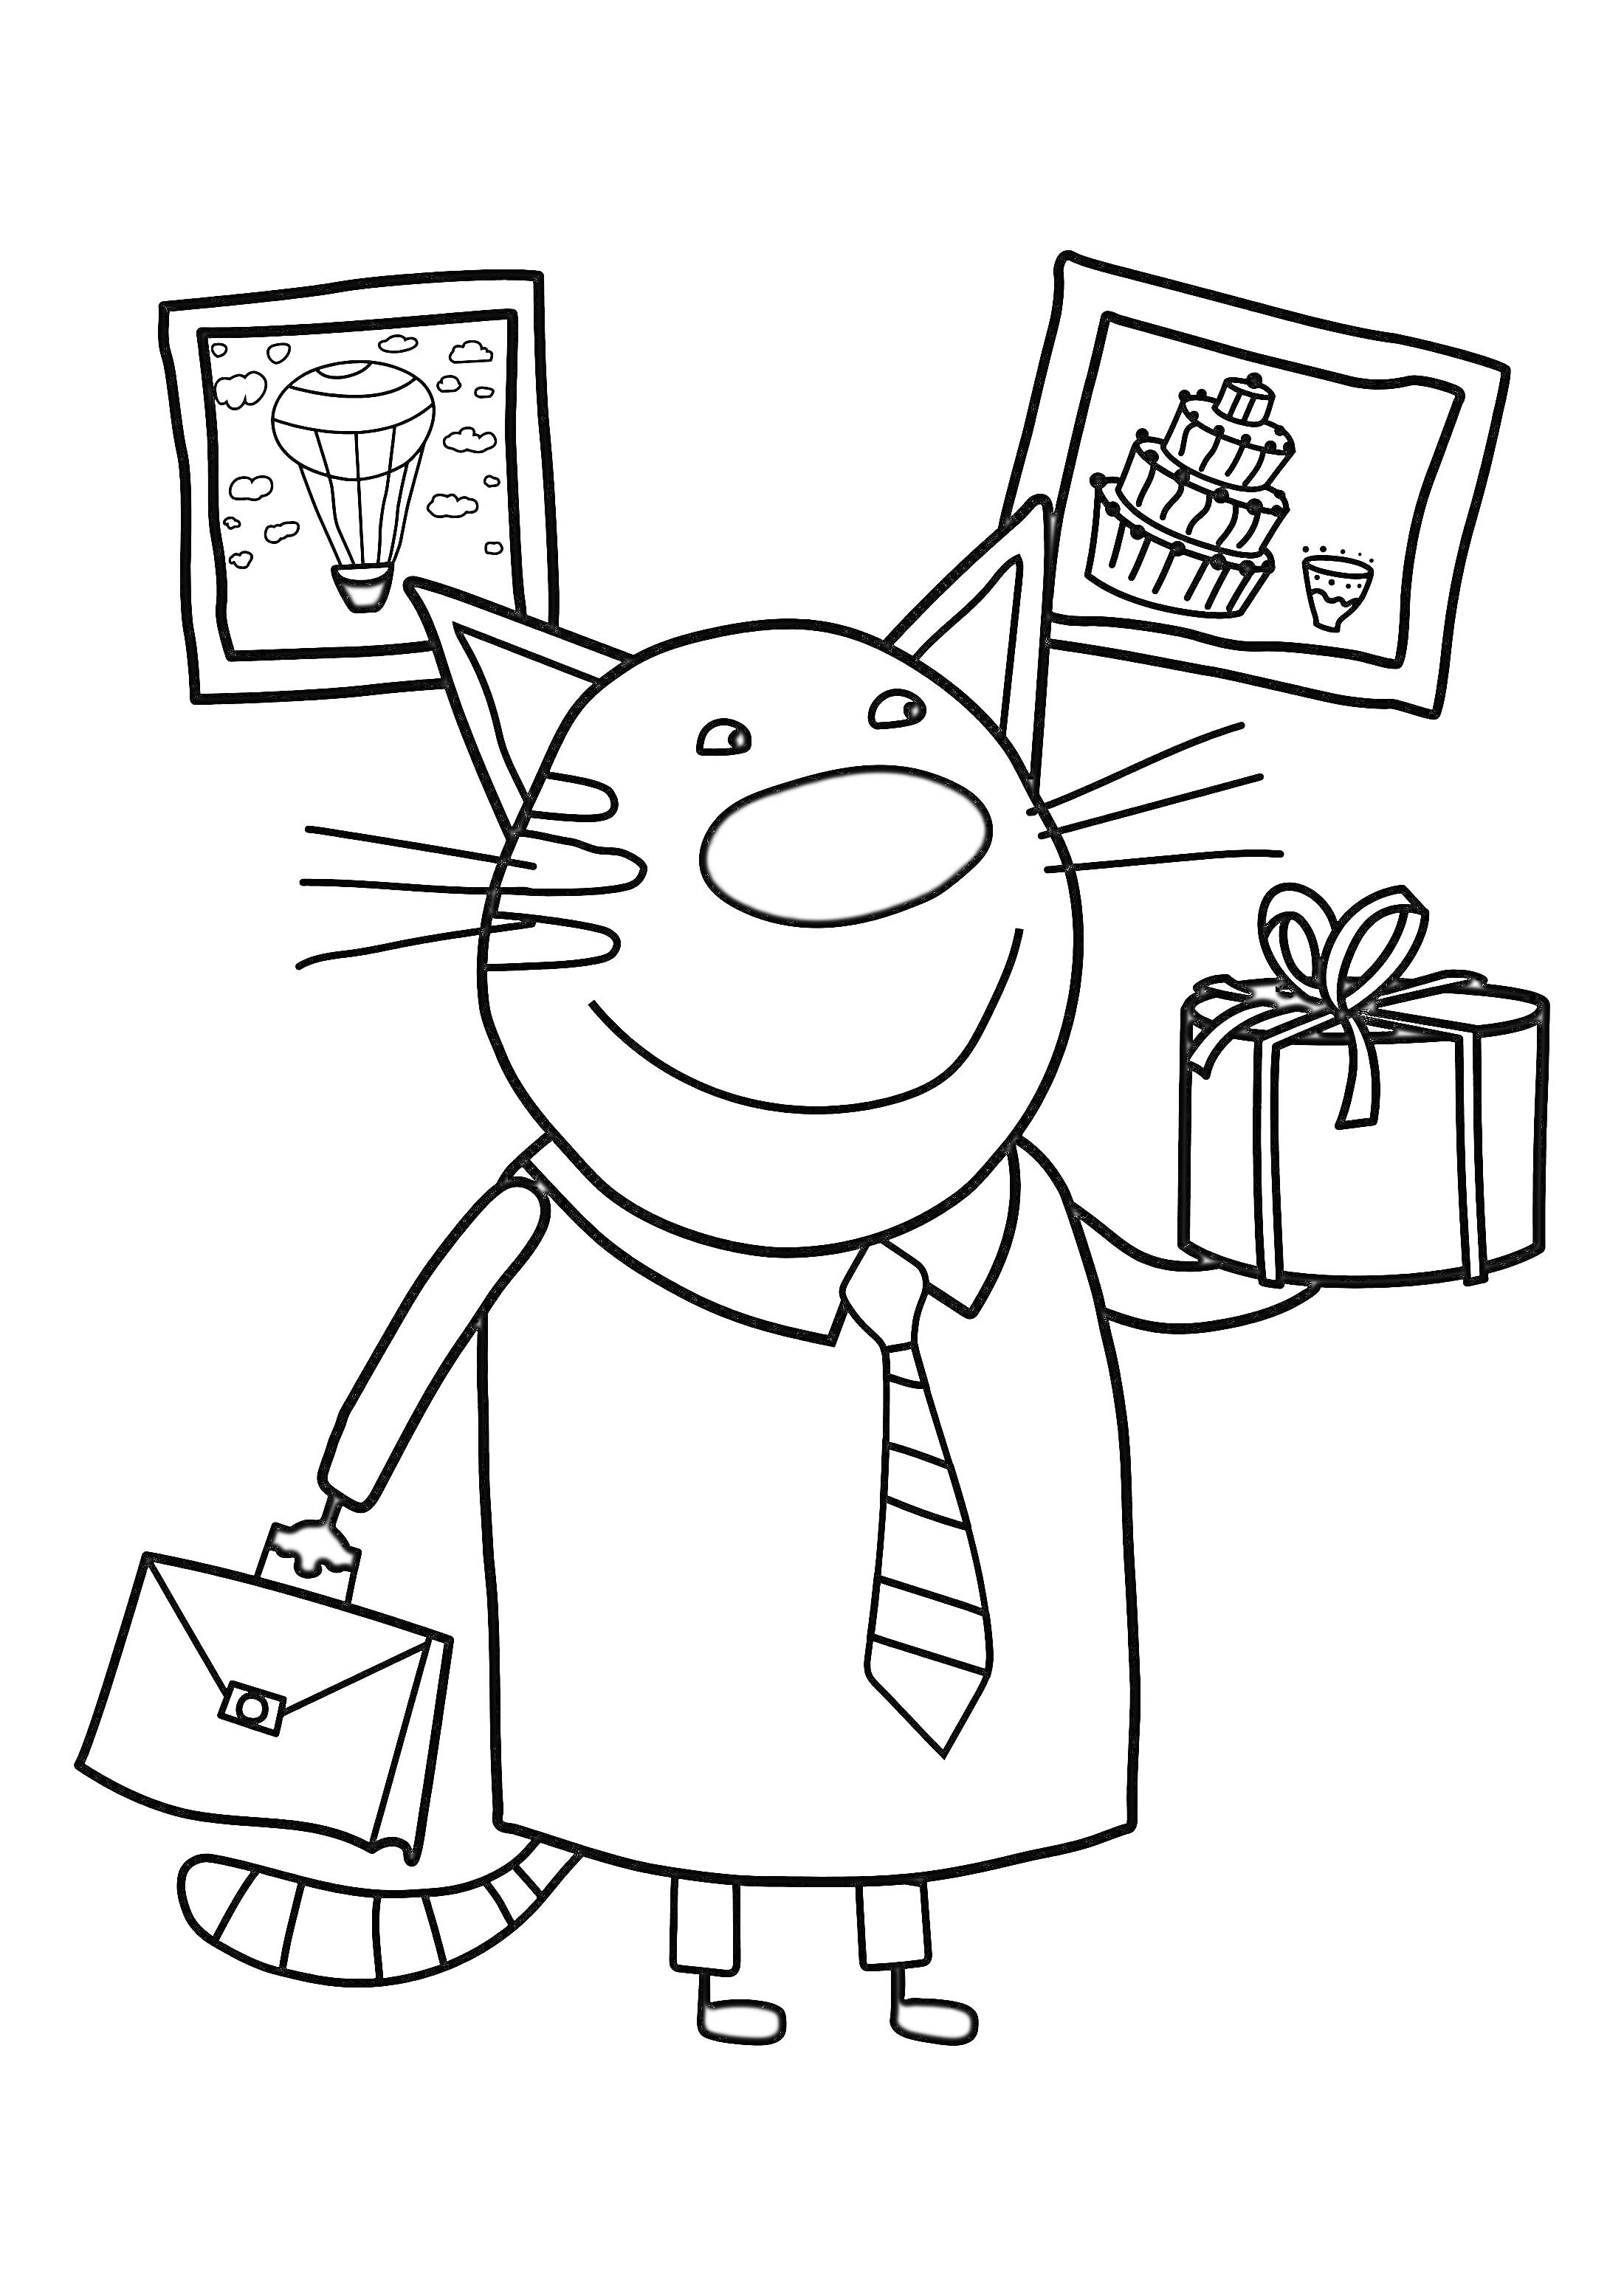 Раскраска Кот в галстуке с подарком и портфелем на фоне картин с воздушным шаром и тортом